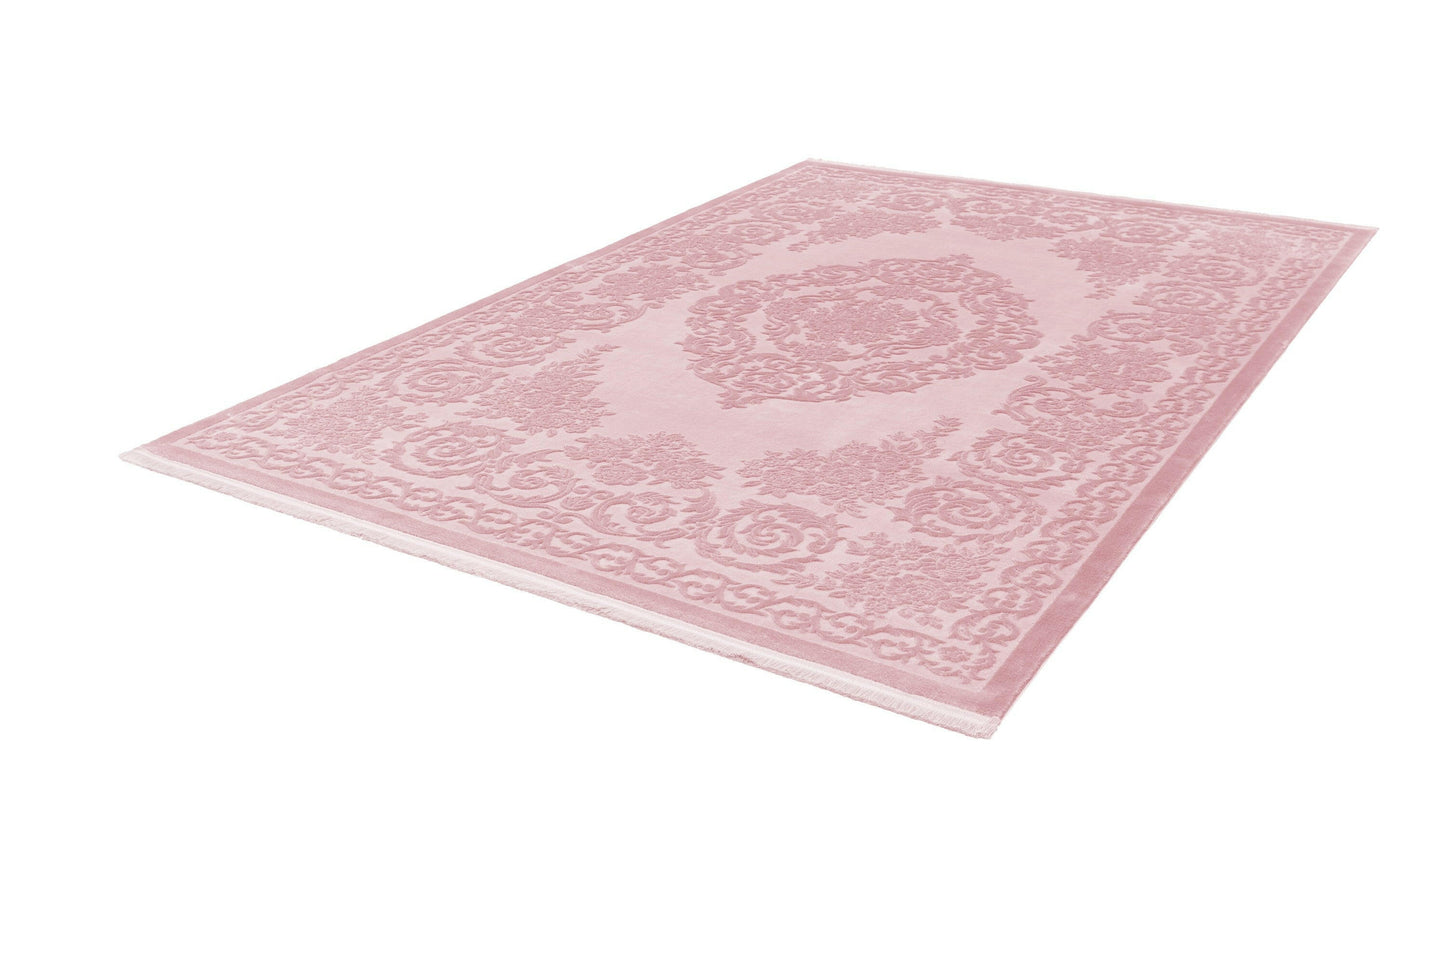 Pierre Cardin - Vendome 700 Pink